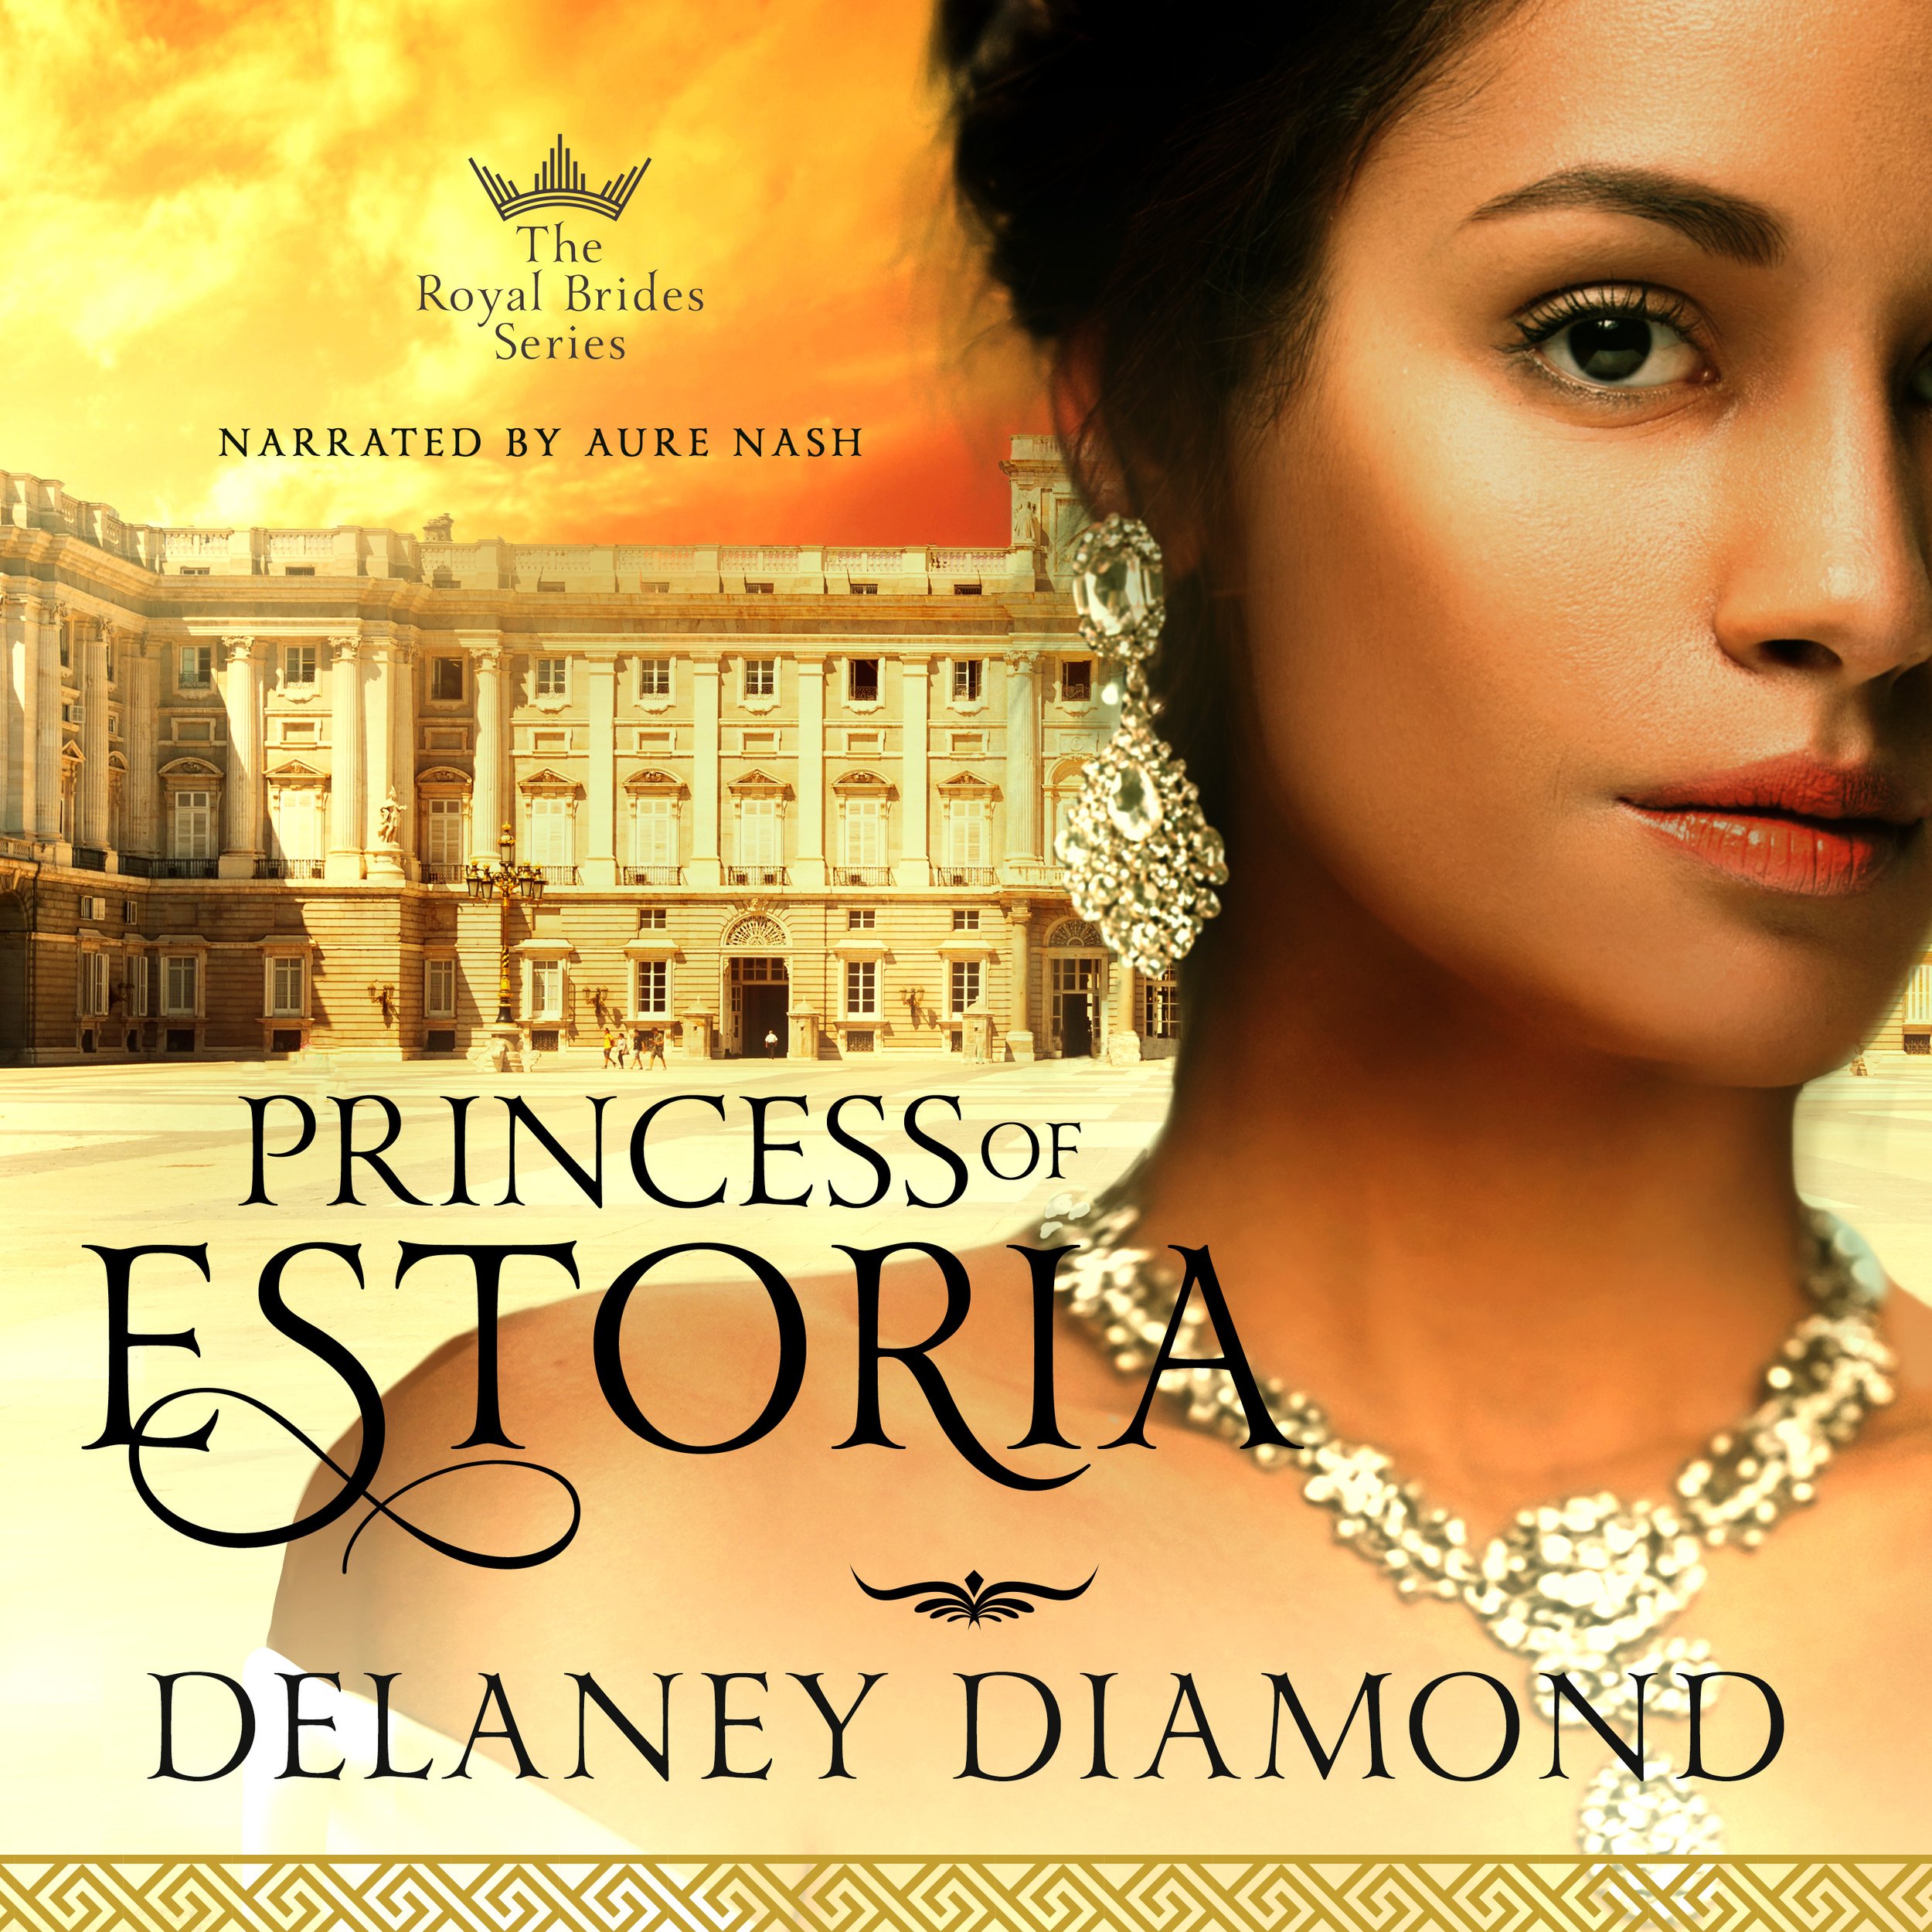 Delaney Diamond_Princess of Estoria.jpeg